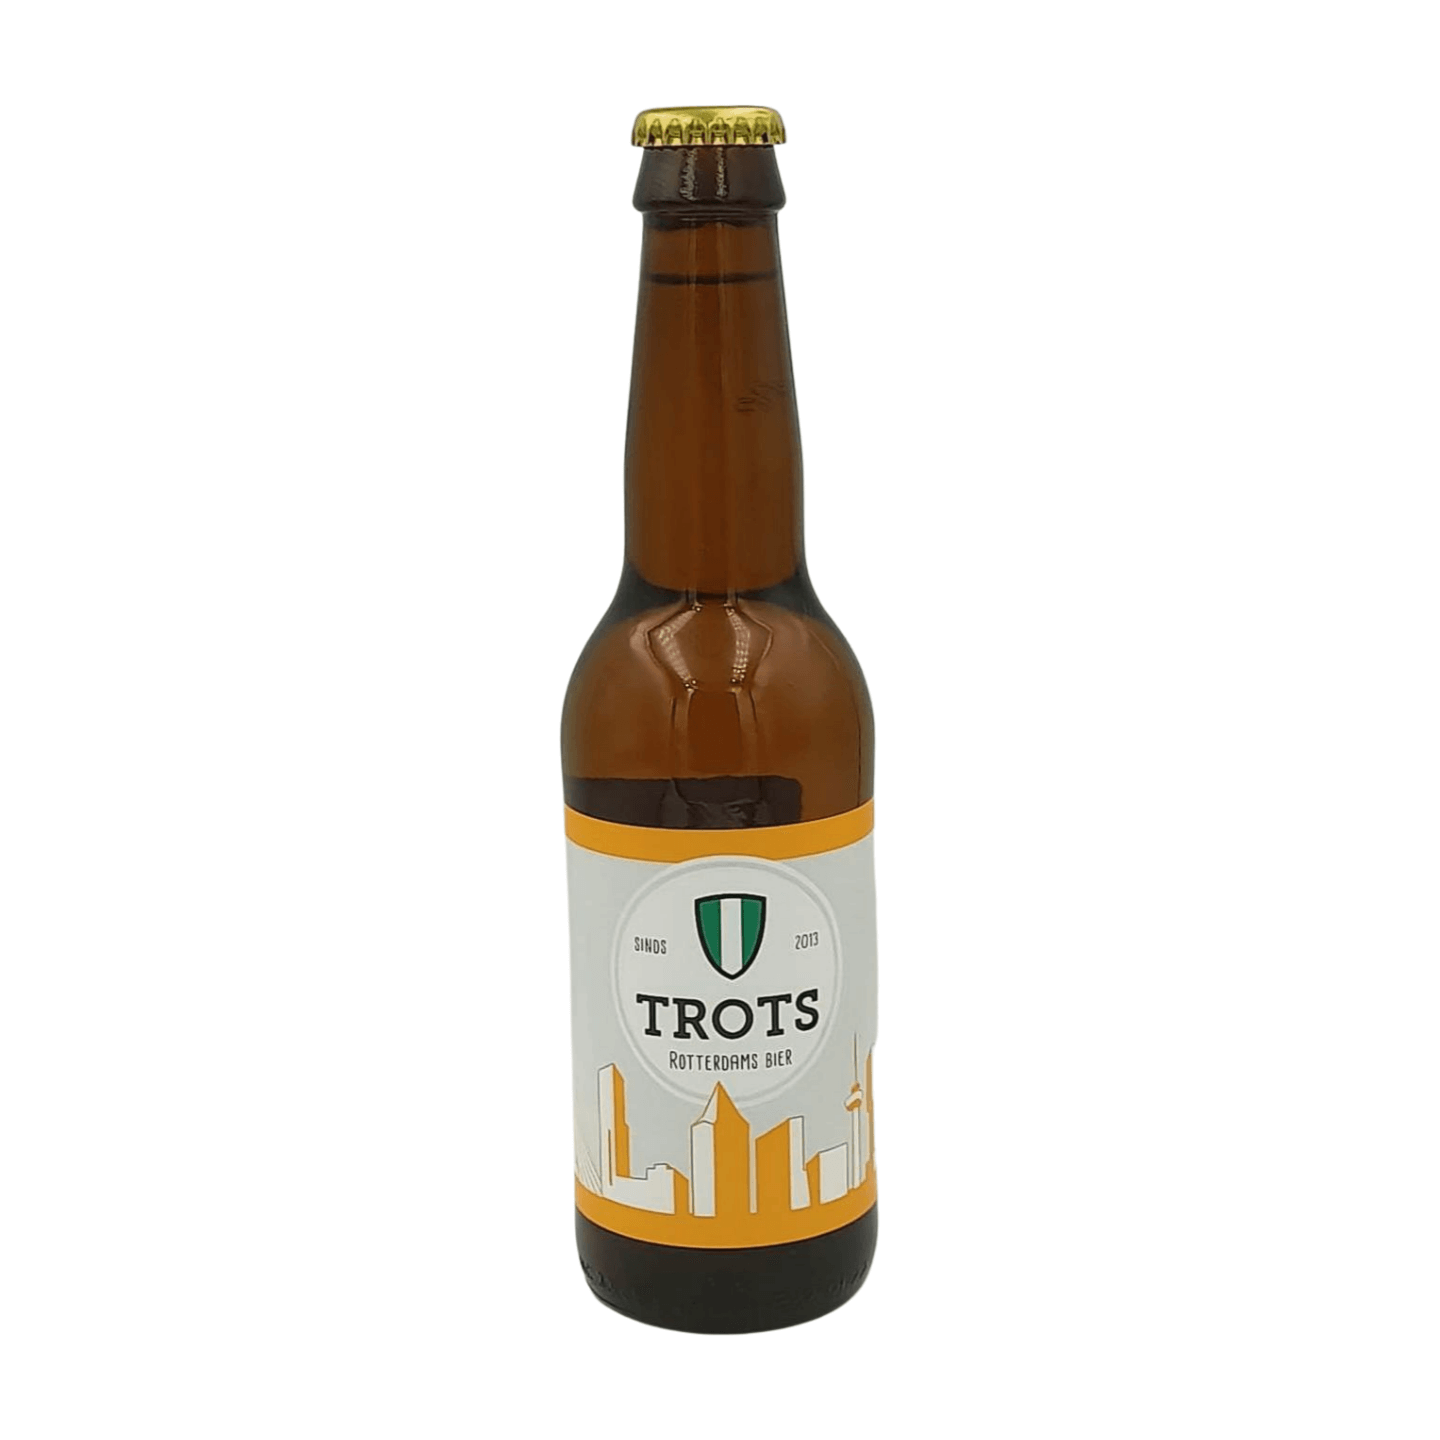 Trots Bier Rotterdam Blond | Blond Bier Webshop Online Verdins Bierwinkel Rotterdam